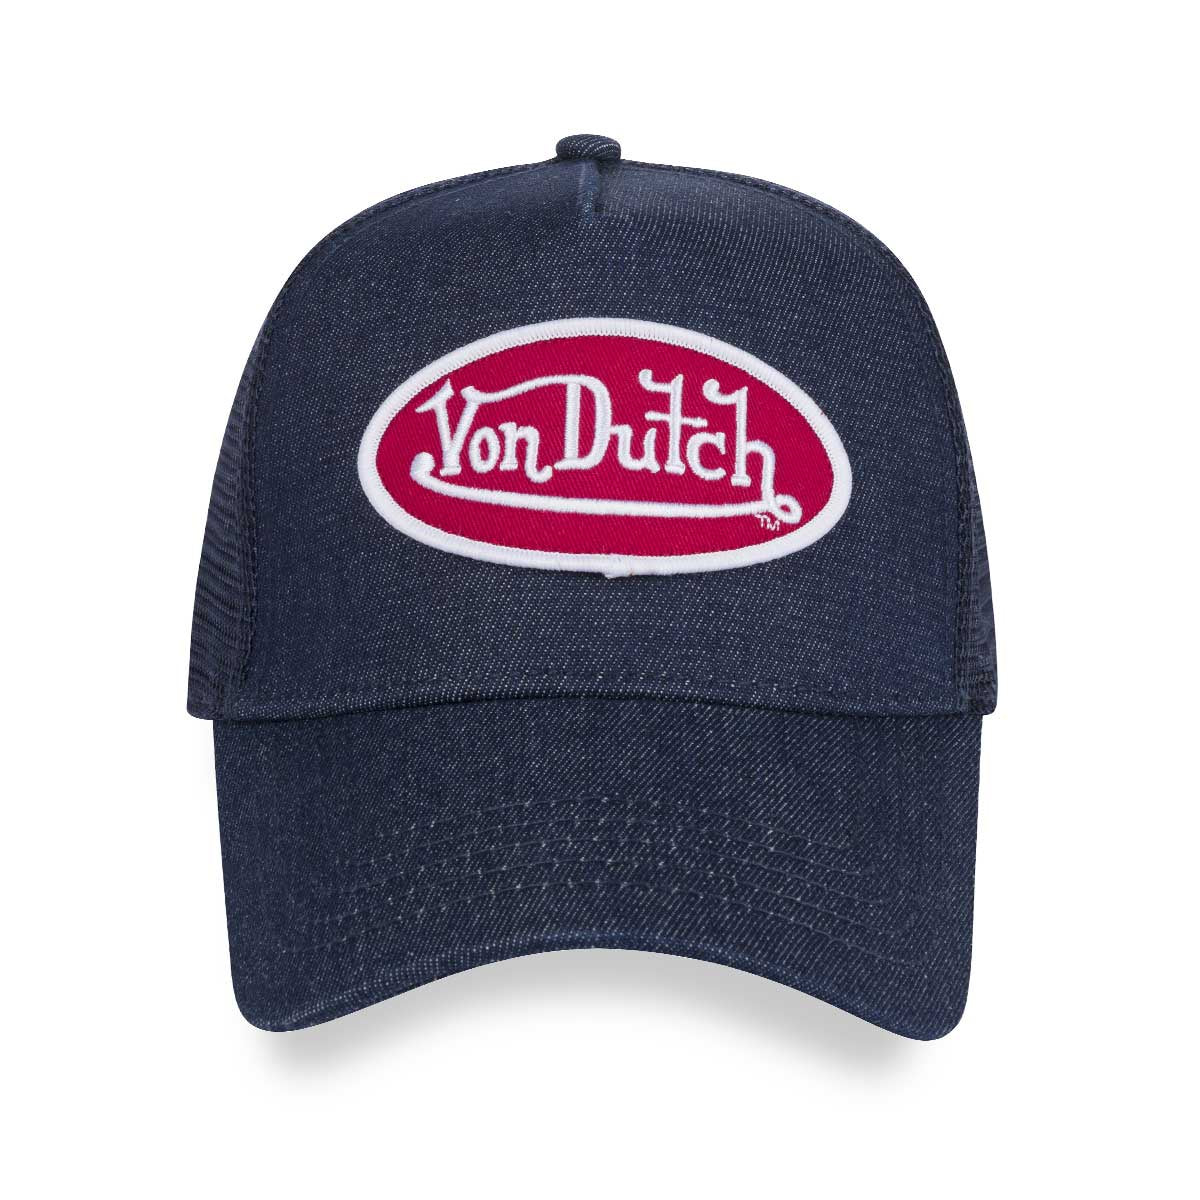 Von Dutch Dark Denim with Red Logo Trucker Cap